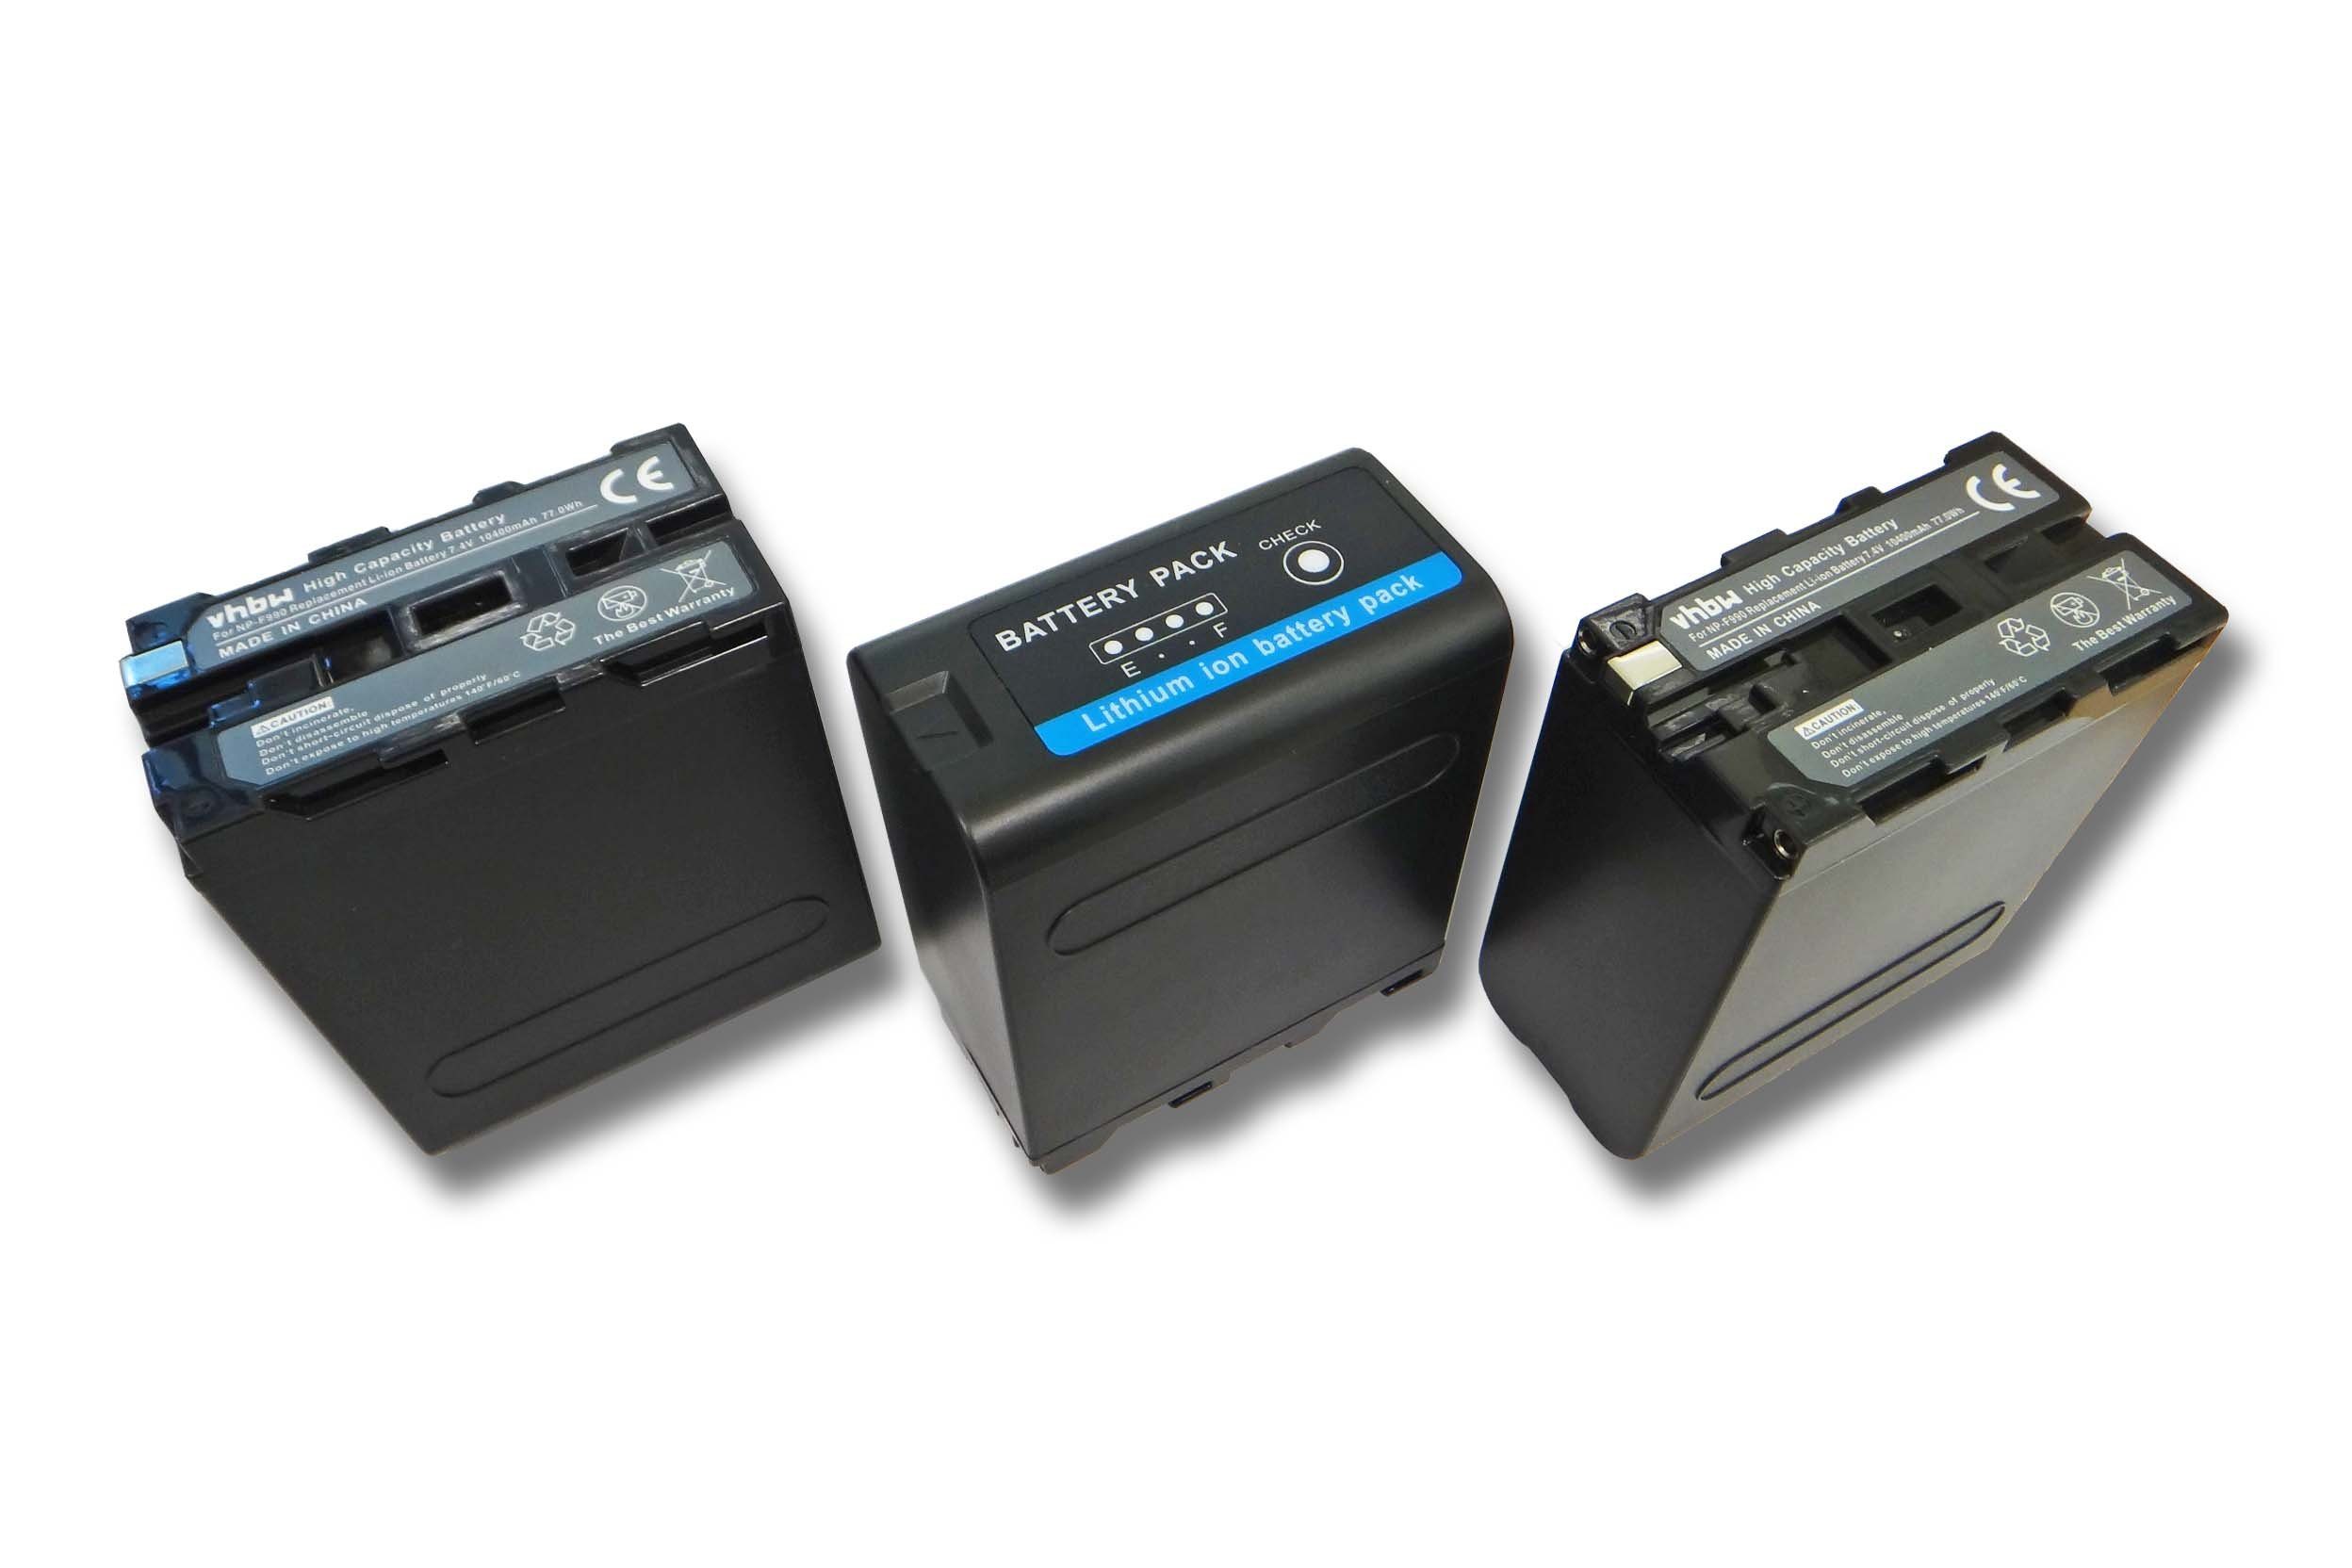 vhbw Kamera-Akku passend für Kompatibel Camcorder Sony CCD-TRV43, CCD-TRV51, MiniDV mAh Li-Ion) CCD-TRV517 7,4V, CCD-TRV46, (10400mAh, mit 10400